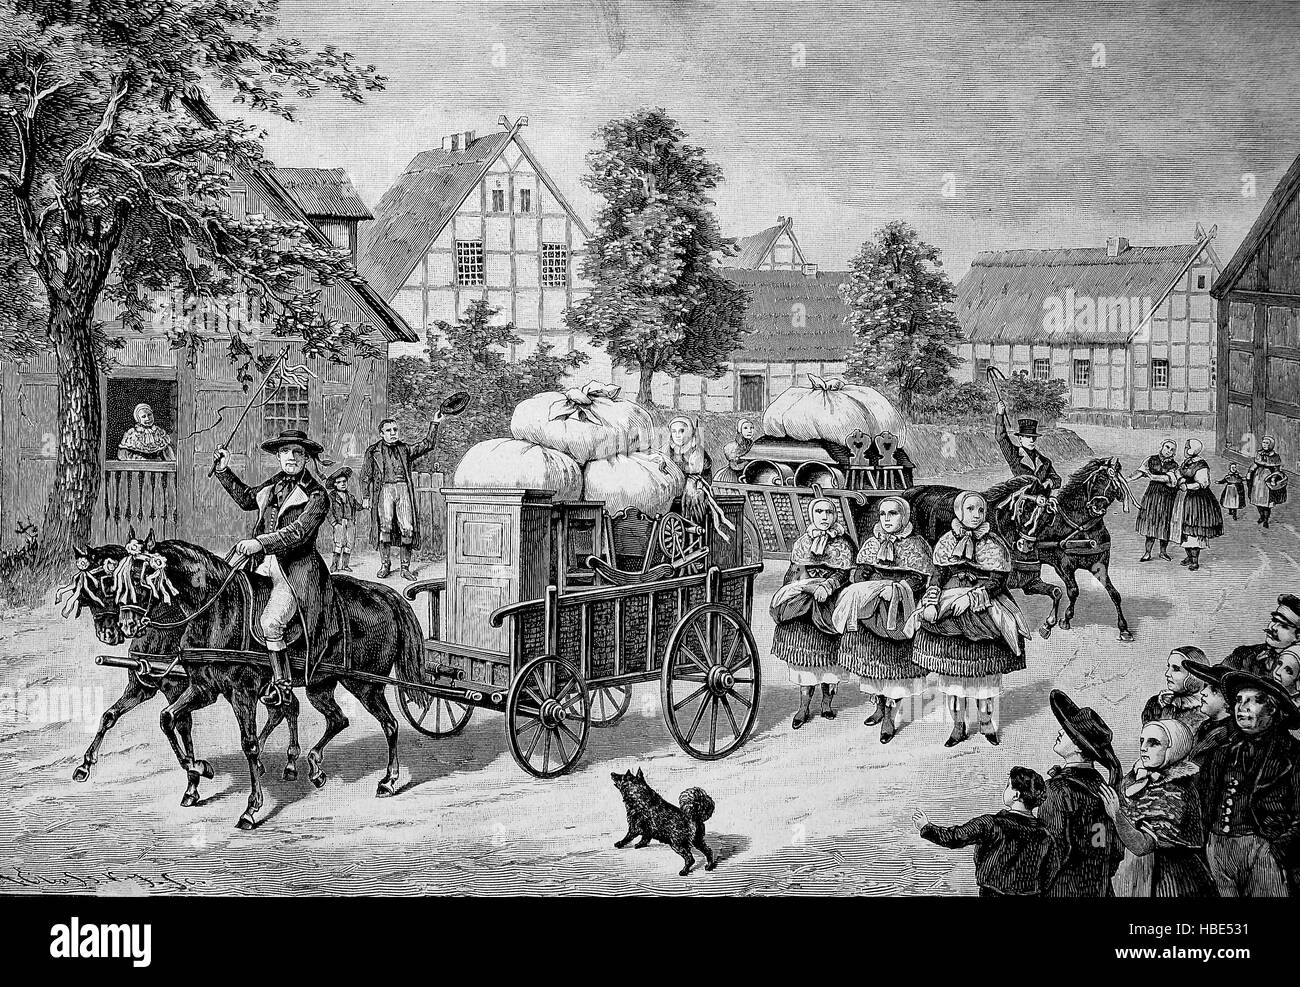 Les lits de la mariée sont entraînés à travers le village par un chariot. Les Douanes en Occidentale, 19e siècle, illustration, gravure sur bois de 1880 Banque D'Images